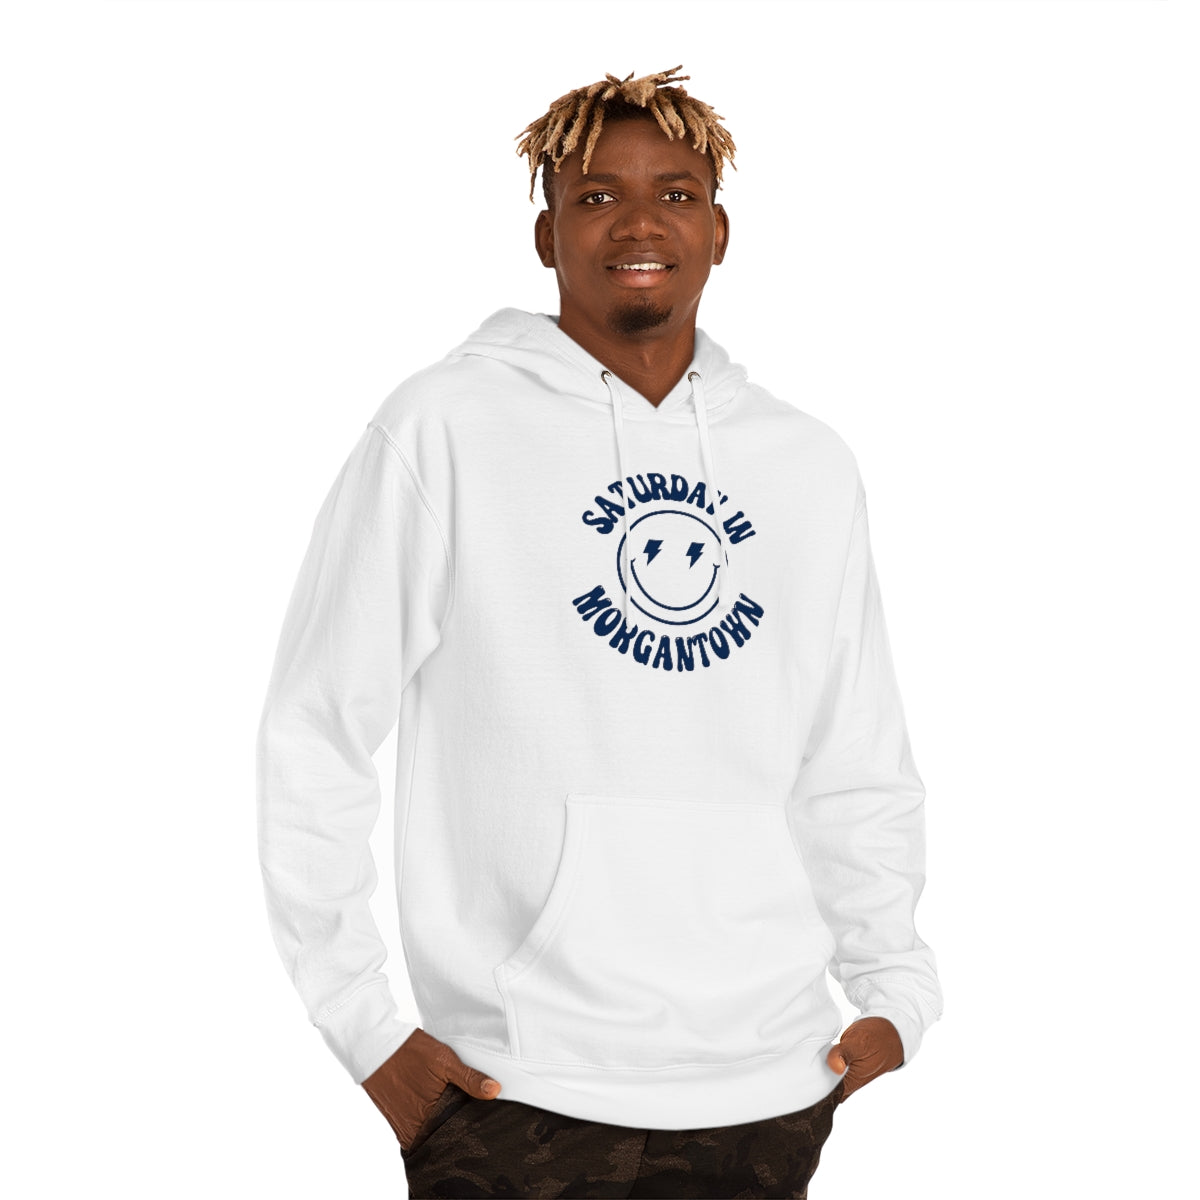 Smiley Morgantown Hooded Sweatshirt - GG - ITC